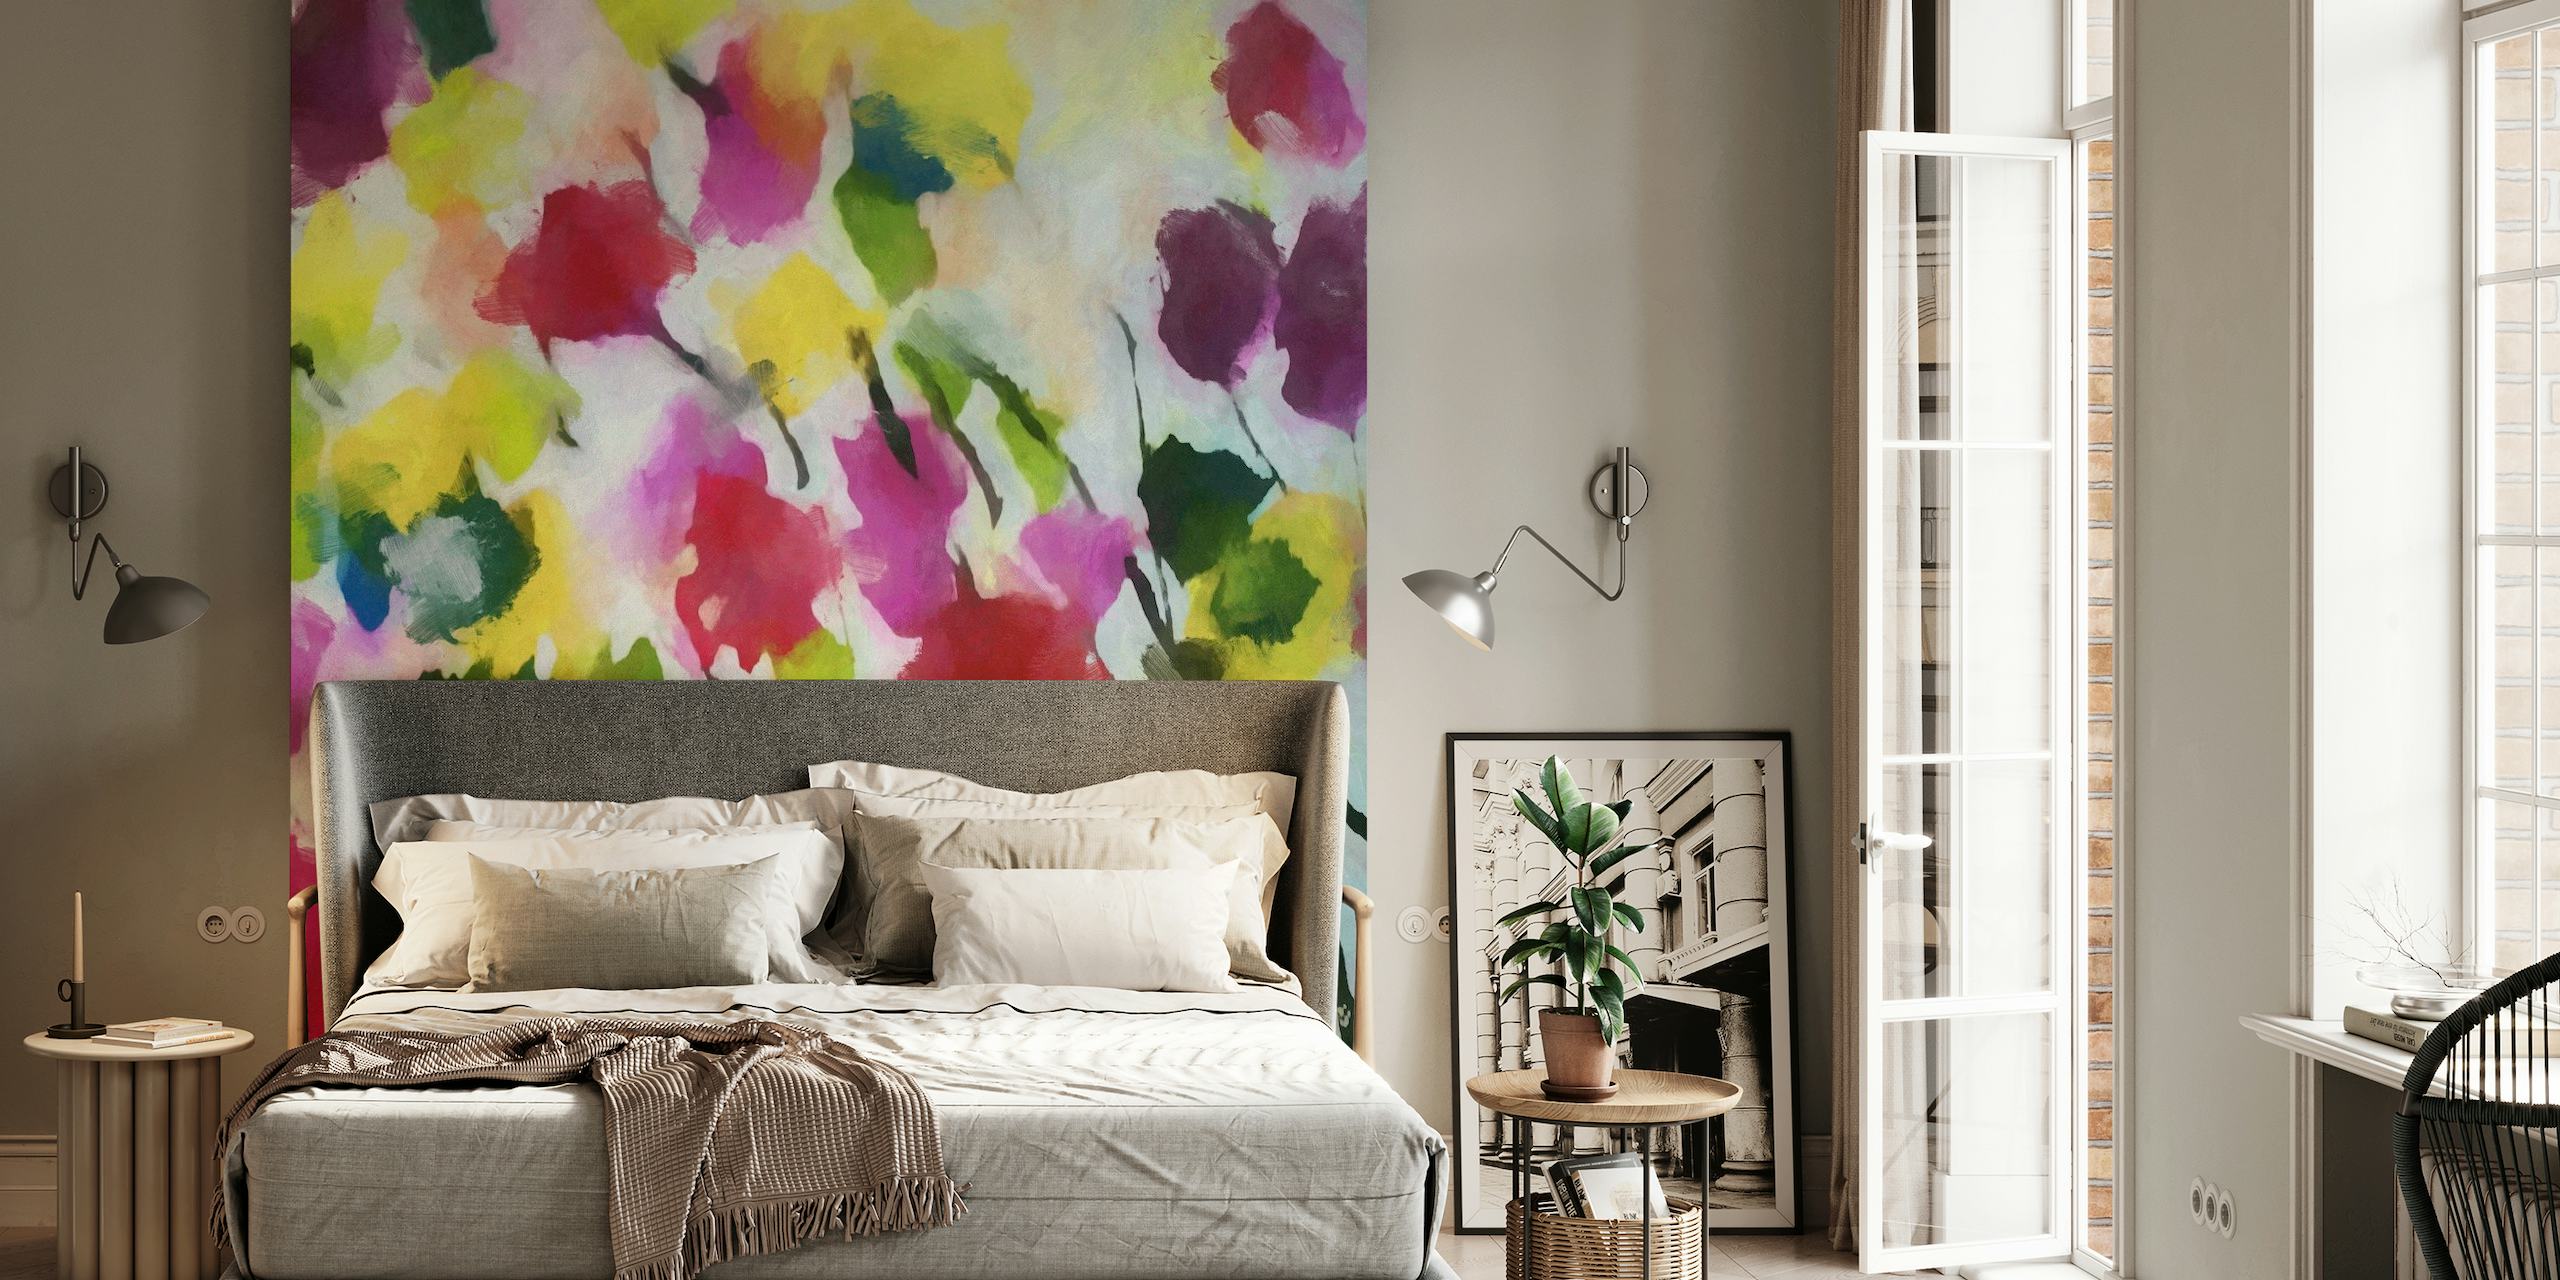 Papier peint floral coloré dans un style aquarelle, avec des fleurs roses, jaunes et vertes